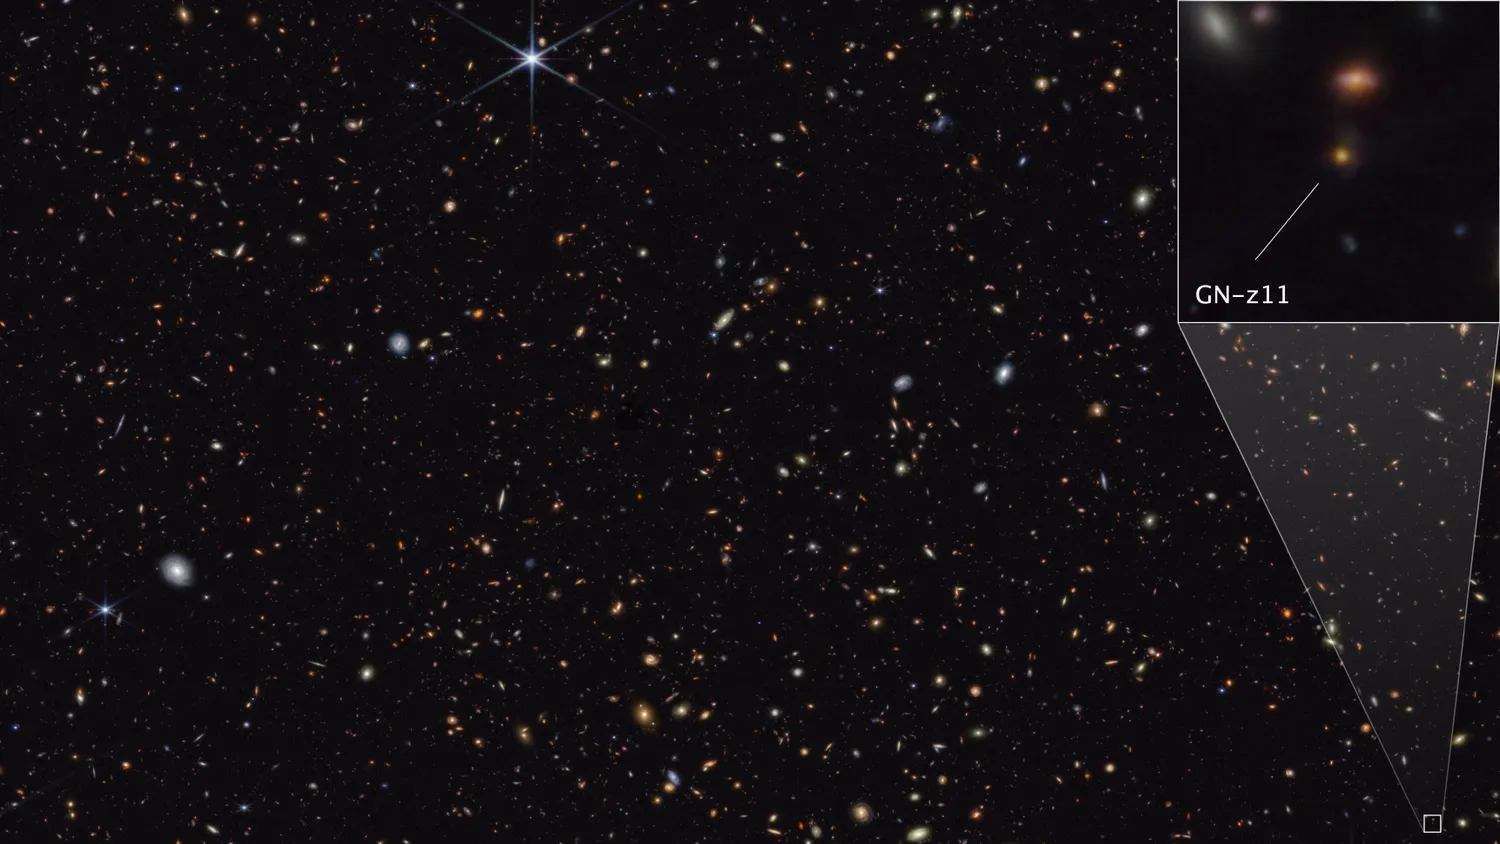 Ein sehr sternreicher und galaktischer Ausschnitt des tiefen Weltraums. Der Kasten oben rechts zeigt eine vergrößerte Ansicht einer der Galaxien.